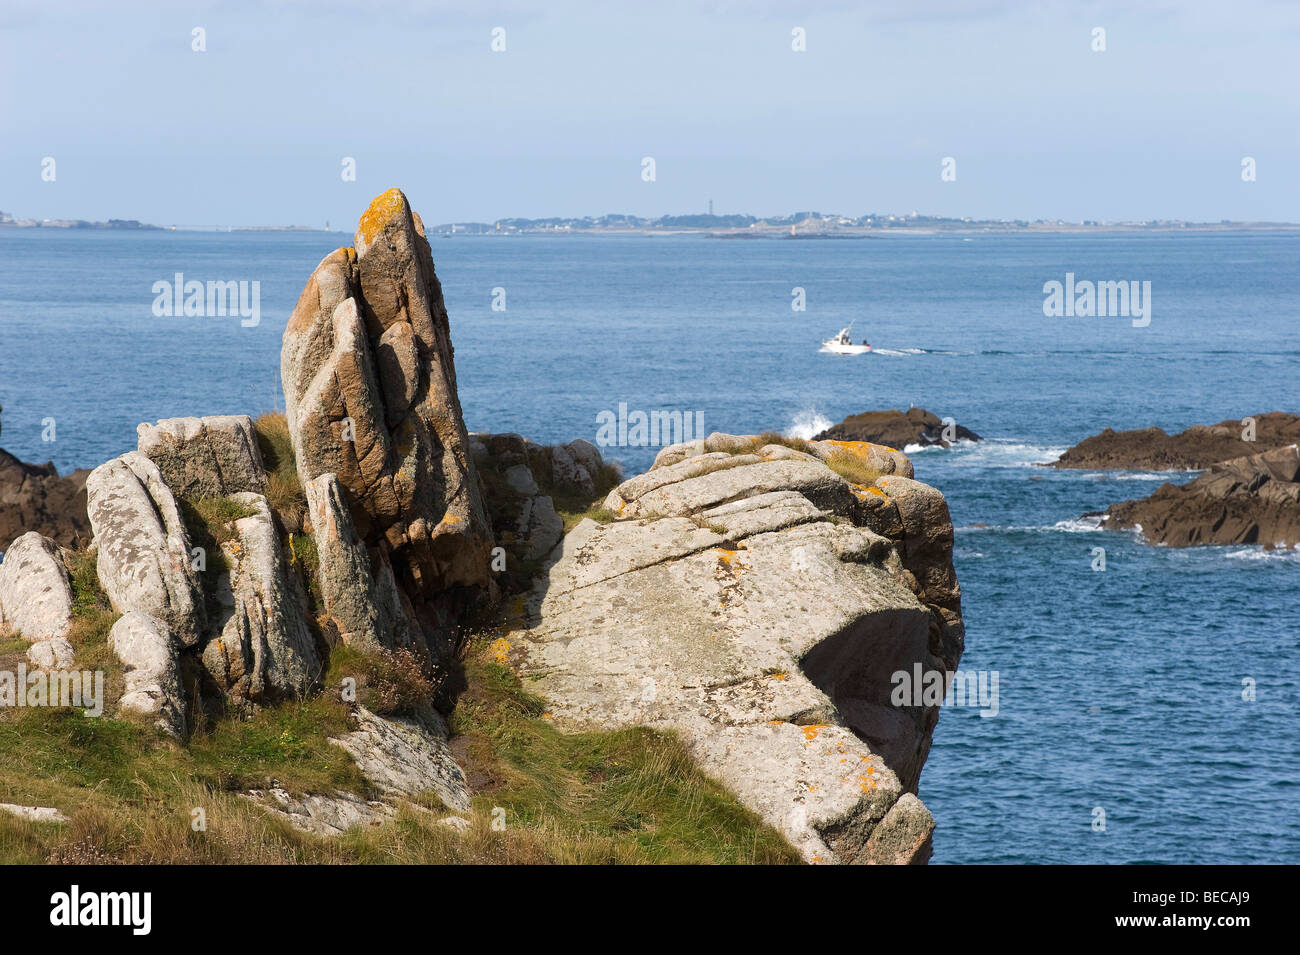 Coast at Le Diben, in the back the Ile de Batz island, Finistere, France, Europe Stock Photo